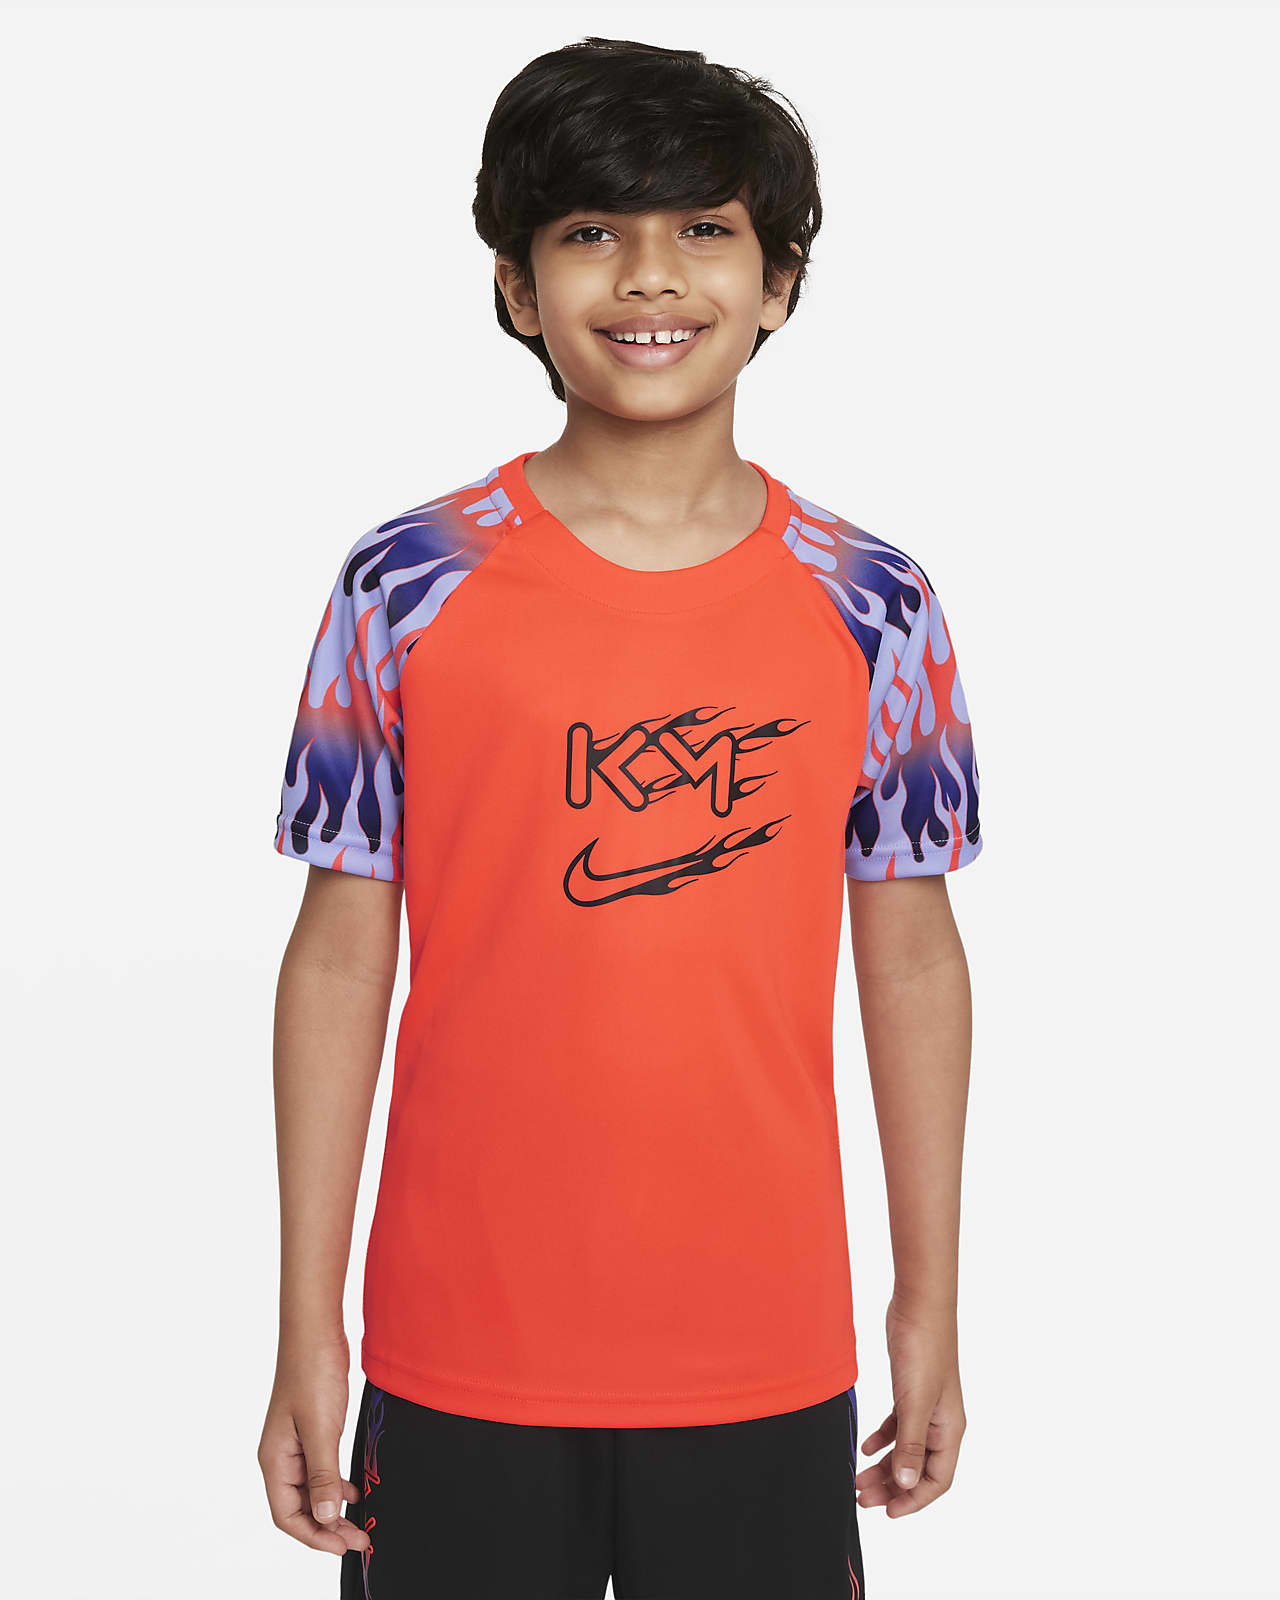 Nike Dri-FIT Kylian Mbappé fotballoverdel til store barn